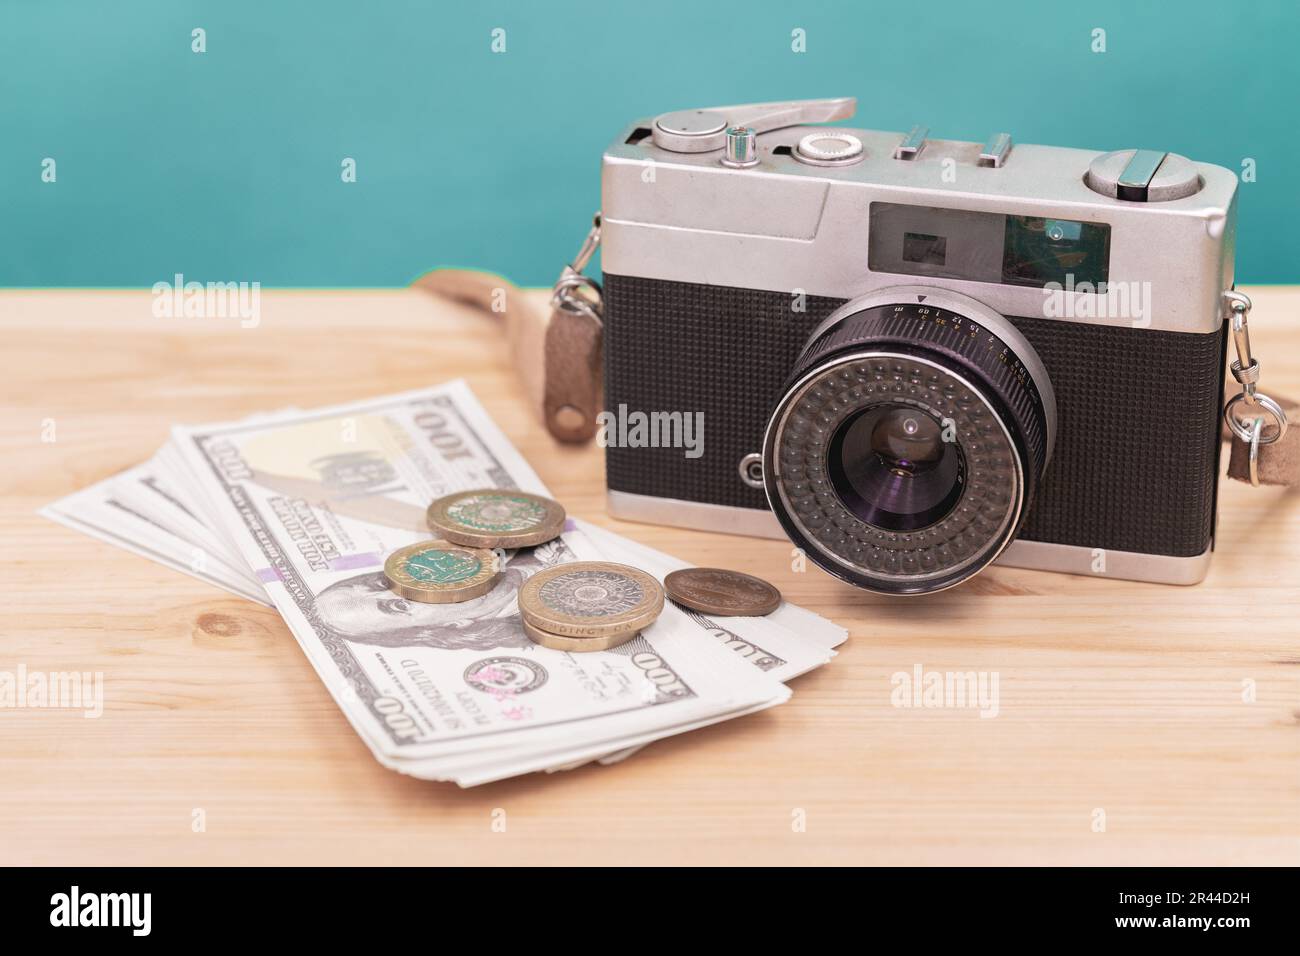 appareil photo vintage avec fausse monnaie pour vendre photographie ou photo de stock-photographe de carrière concept Banque D'Images